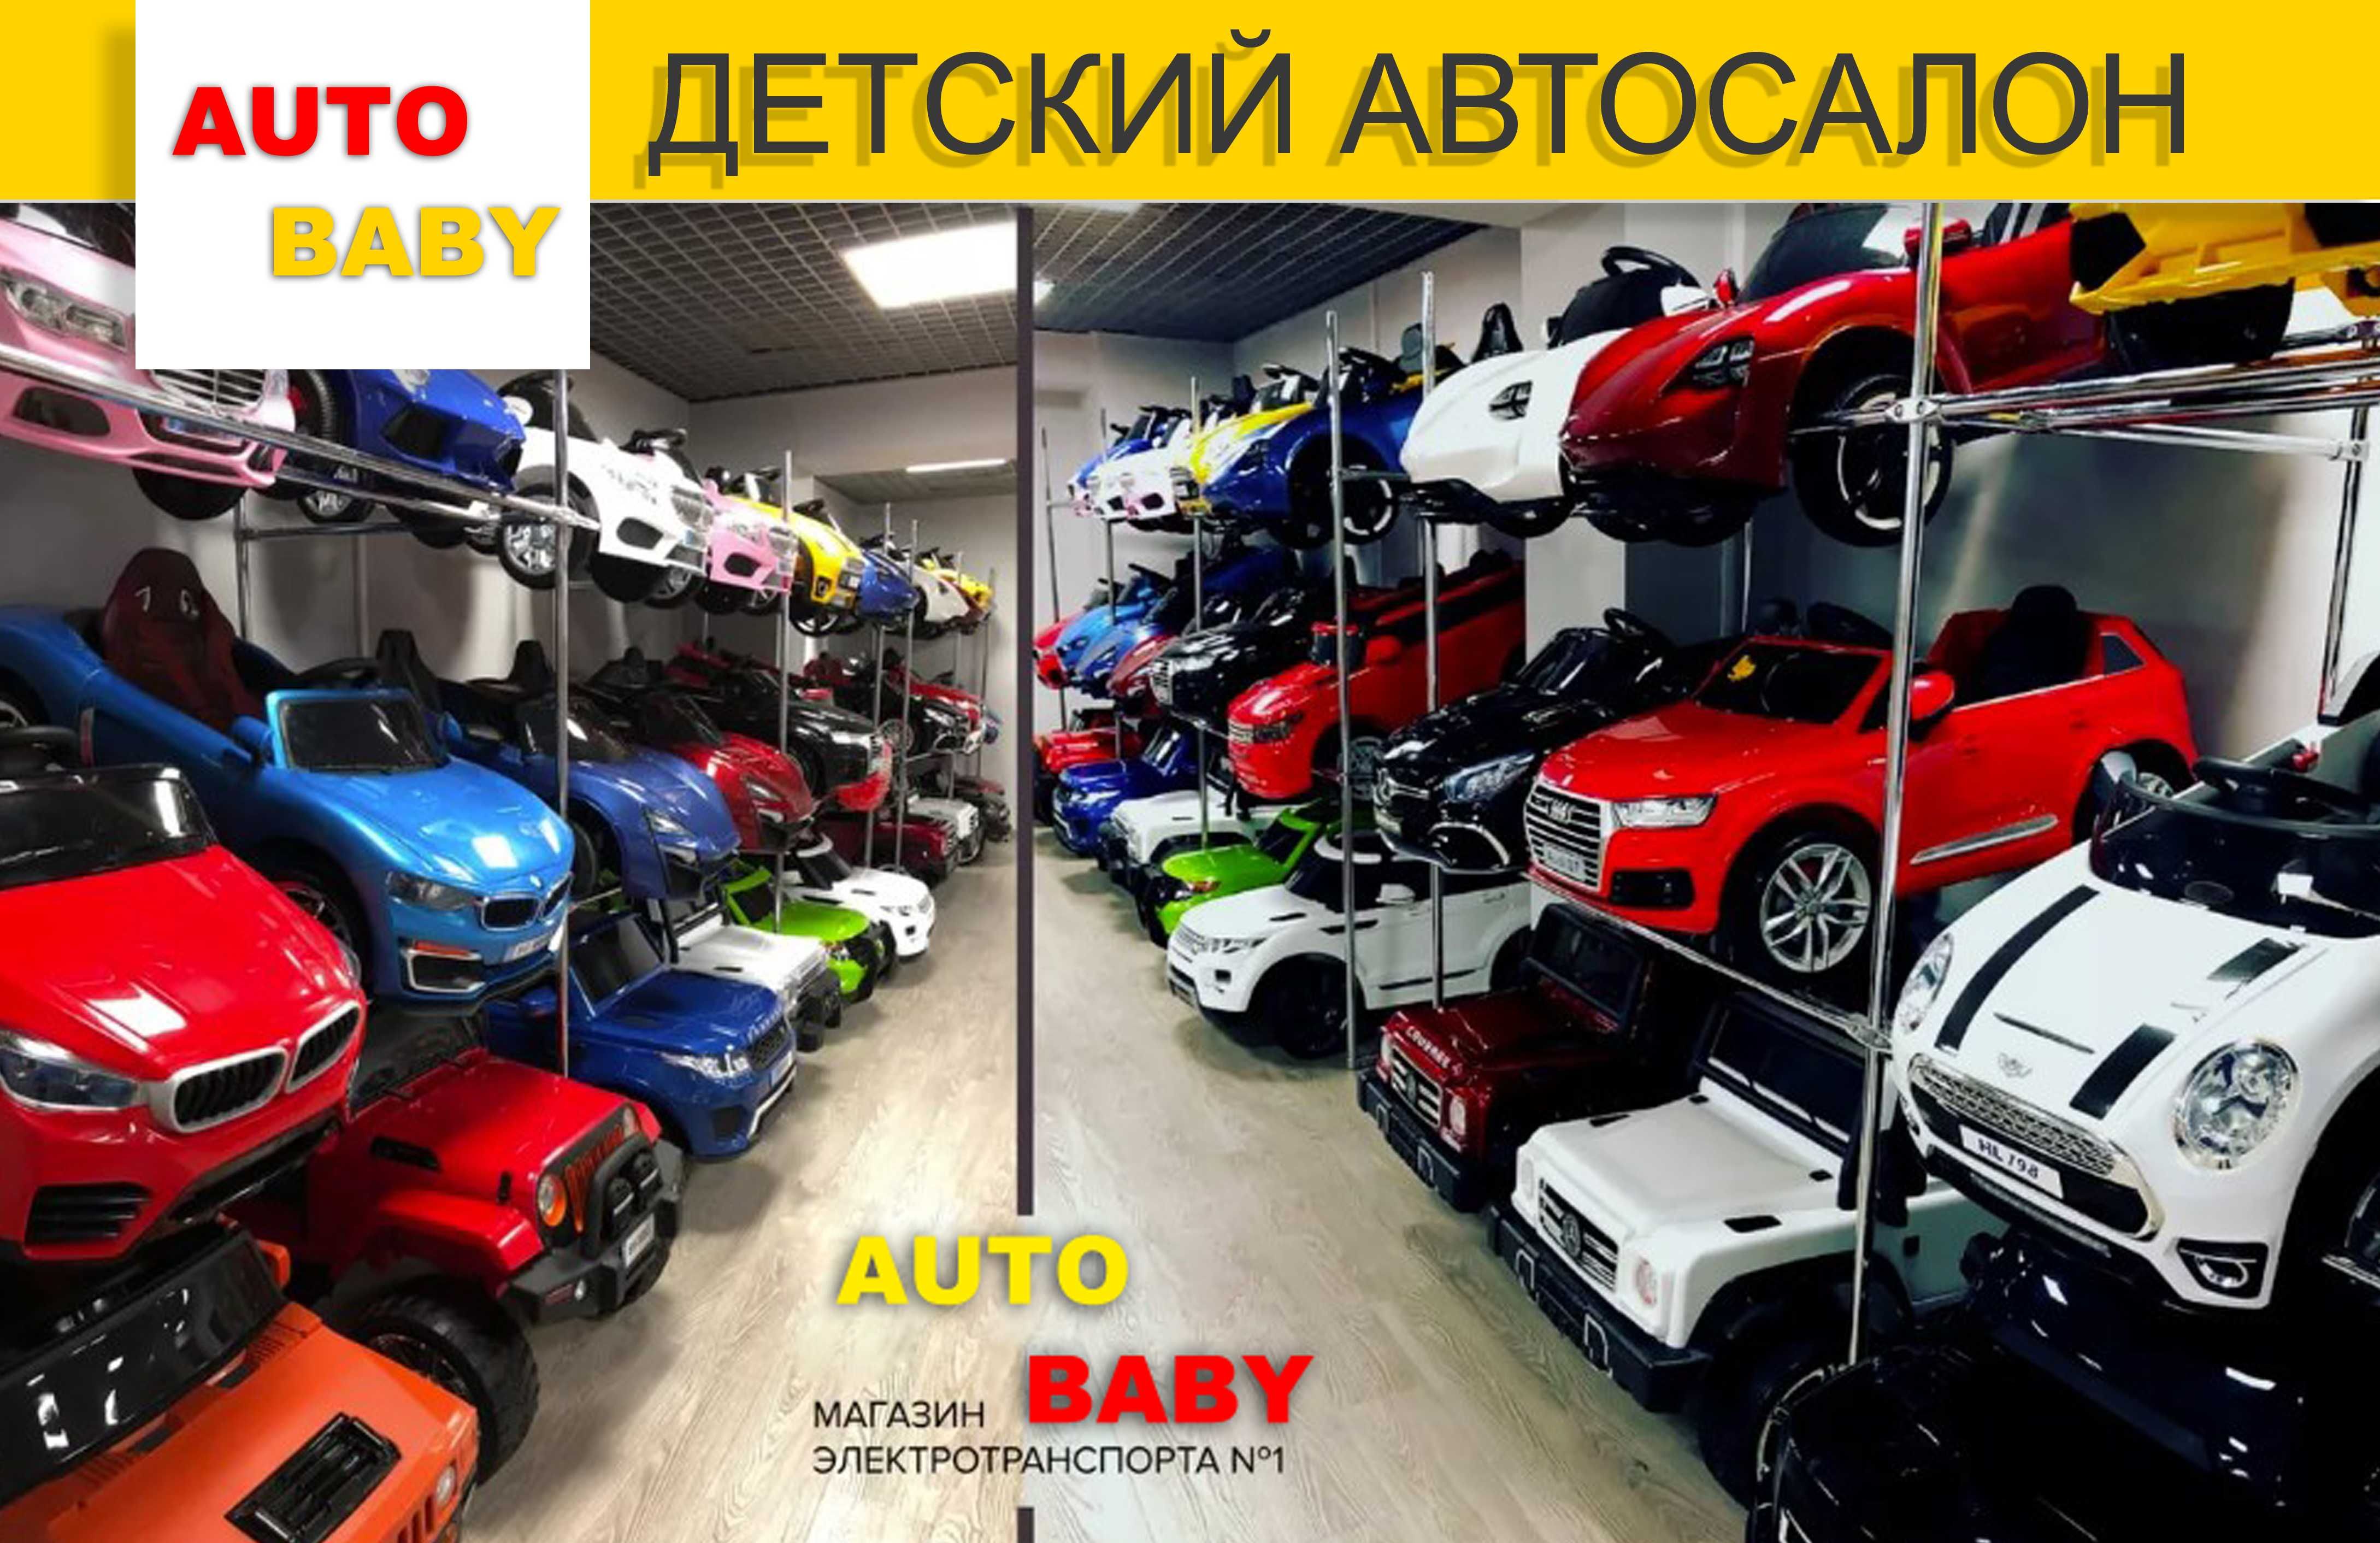 Детские Электромобили - Большой Выбор Моделей в Киеве! Низкие Цены